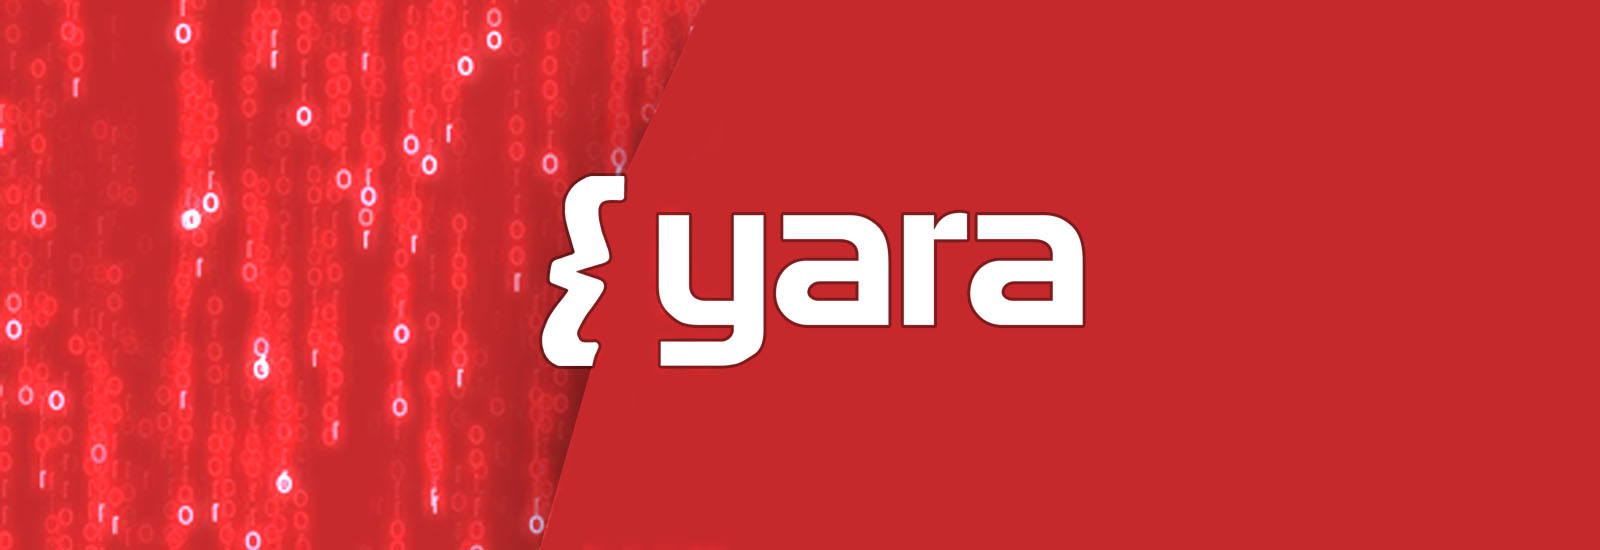 ابزار yara چیست